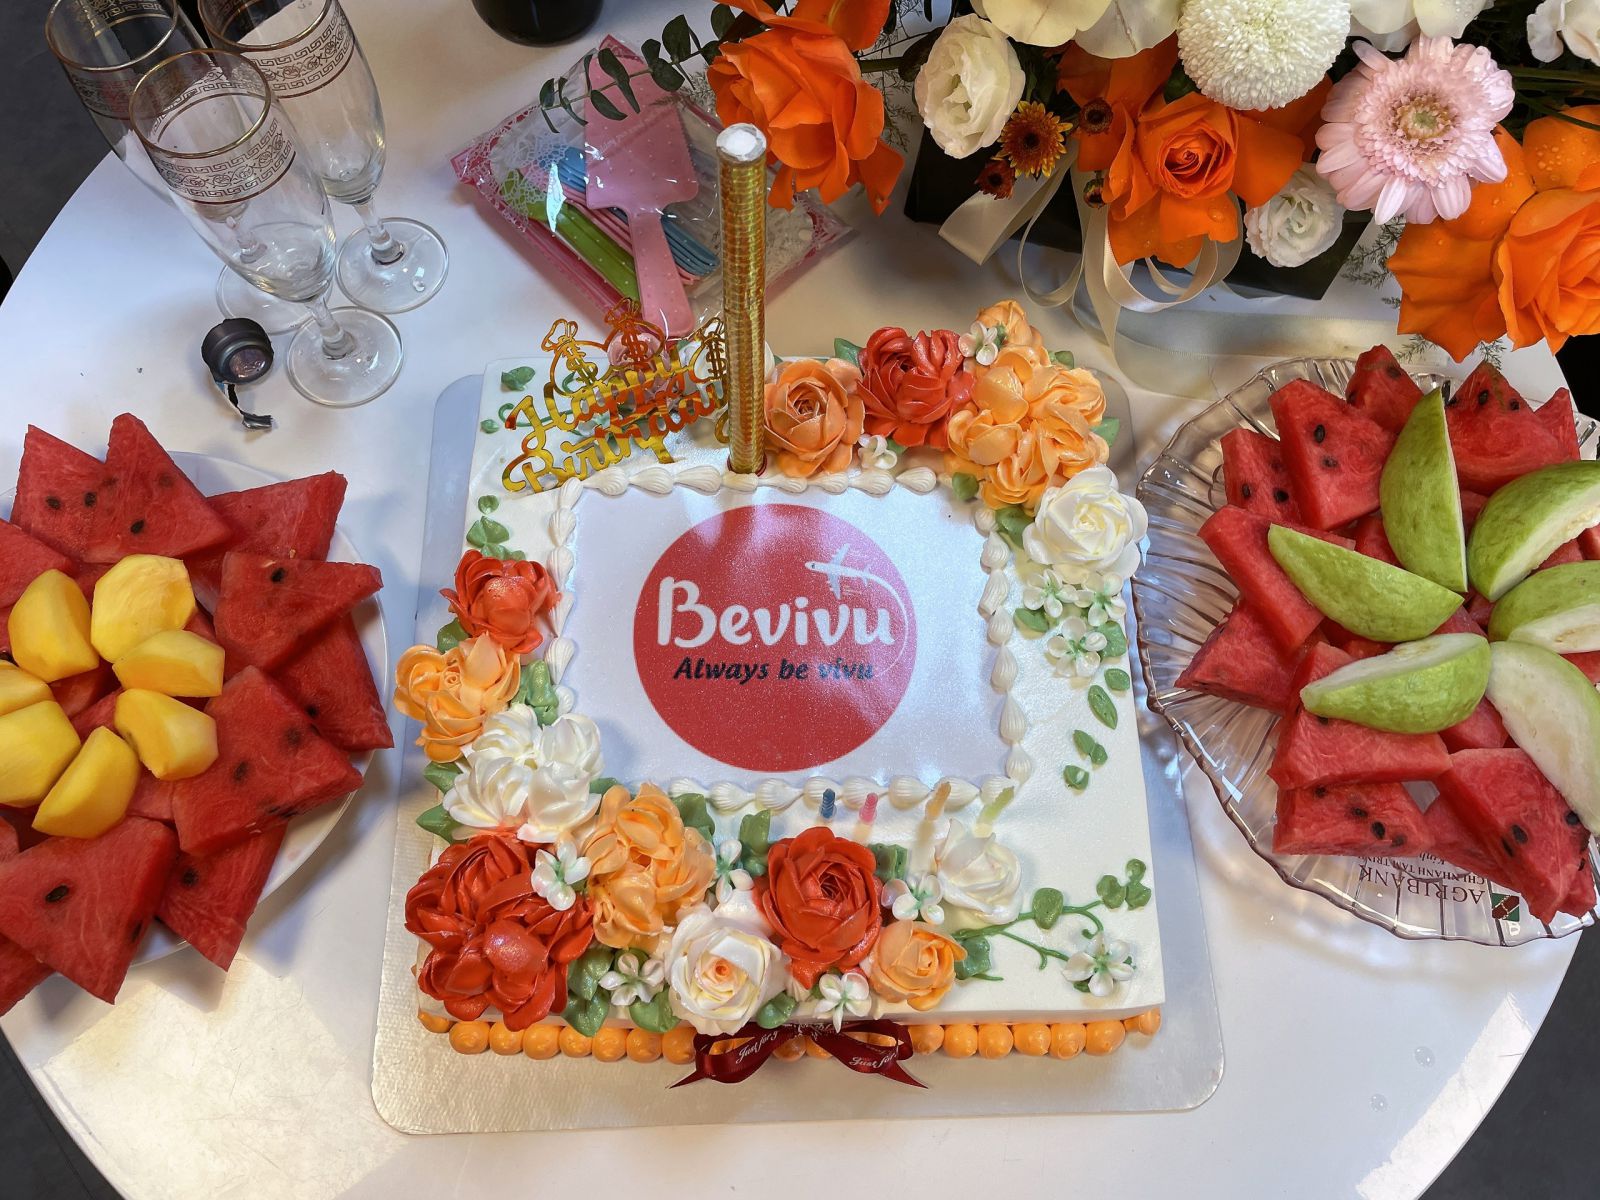 Bữa tiệc sinh nhật Bevivu diễn ra thành công tốt đẹp